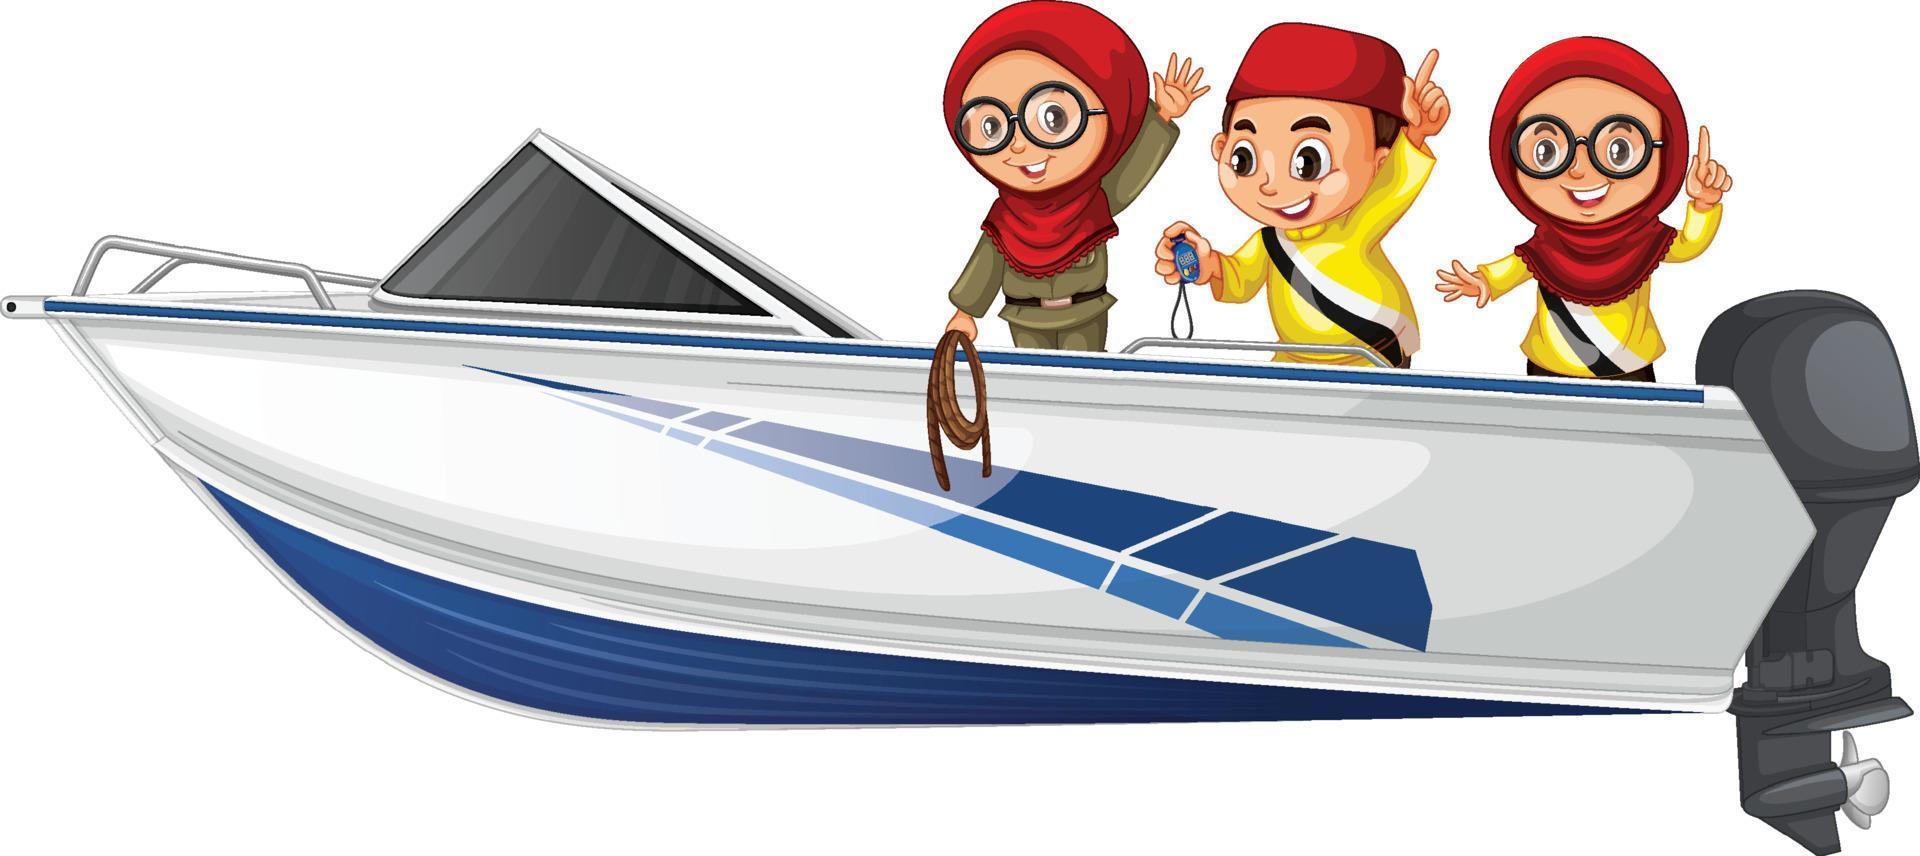 Kerst jongen en meisje staan op een boot op een witte achtergrond vector